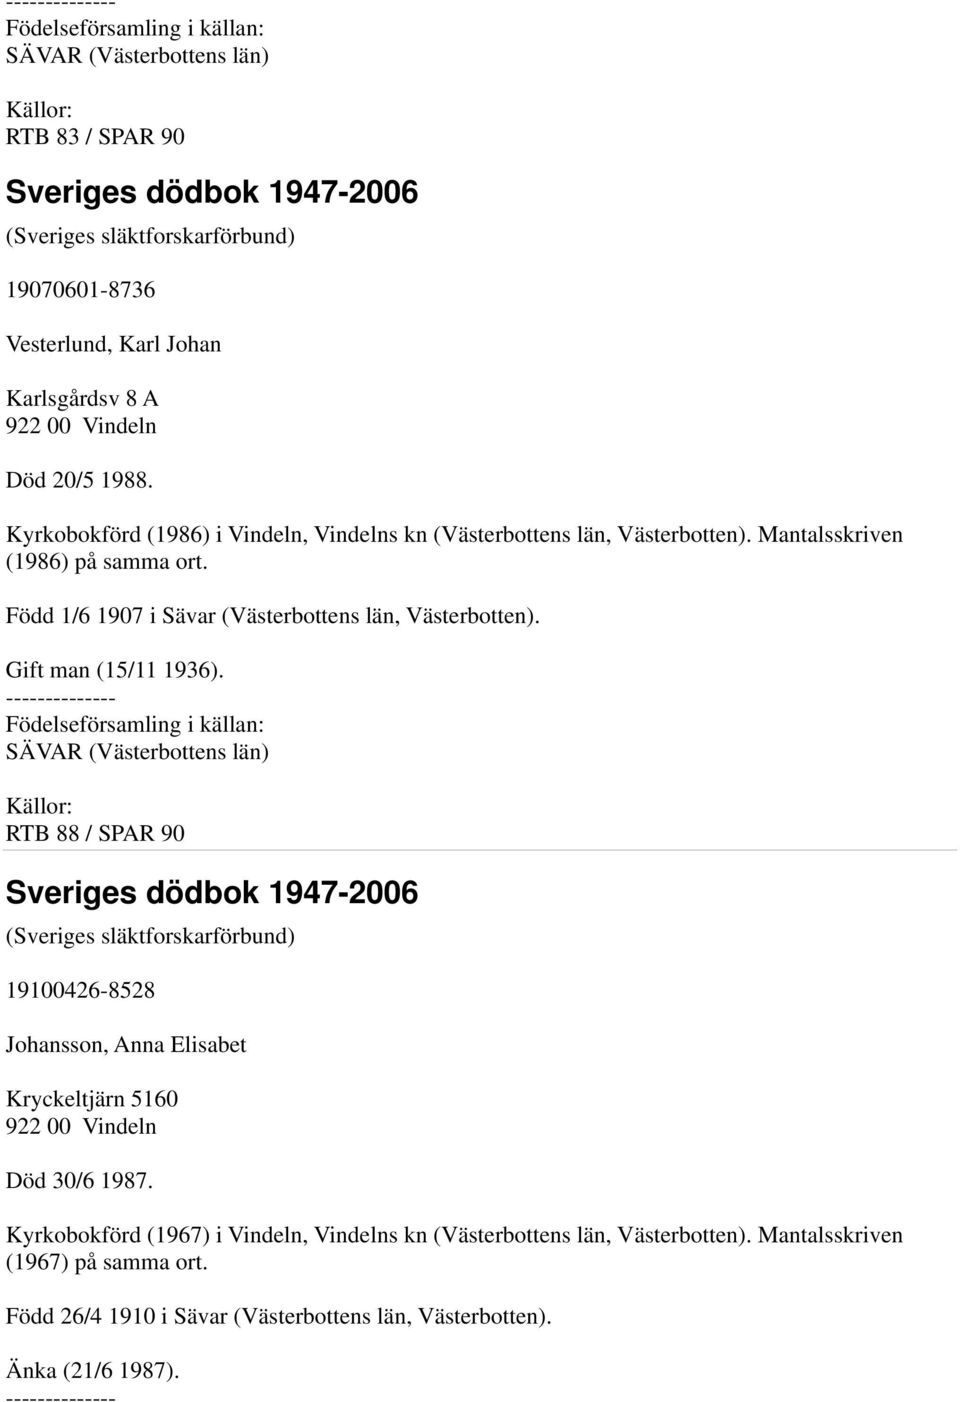 Född 1/6 1907 i Sävar (Västerbottens län, Västerbotten). Gift man (15/11 1936).